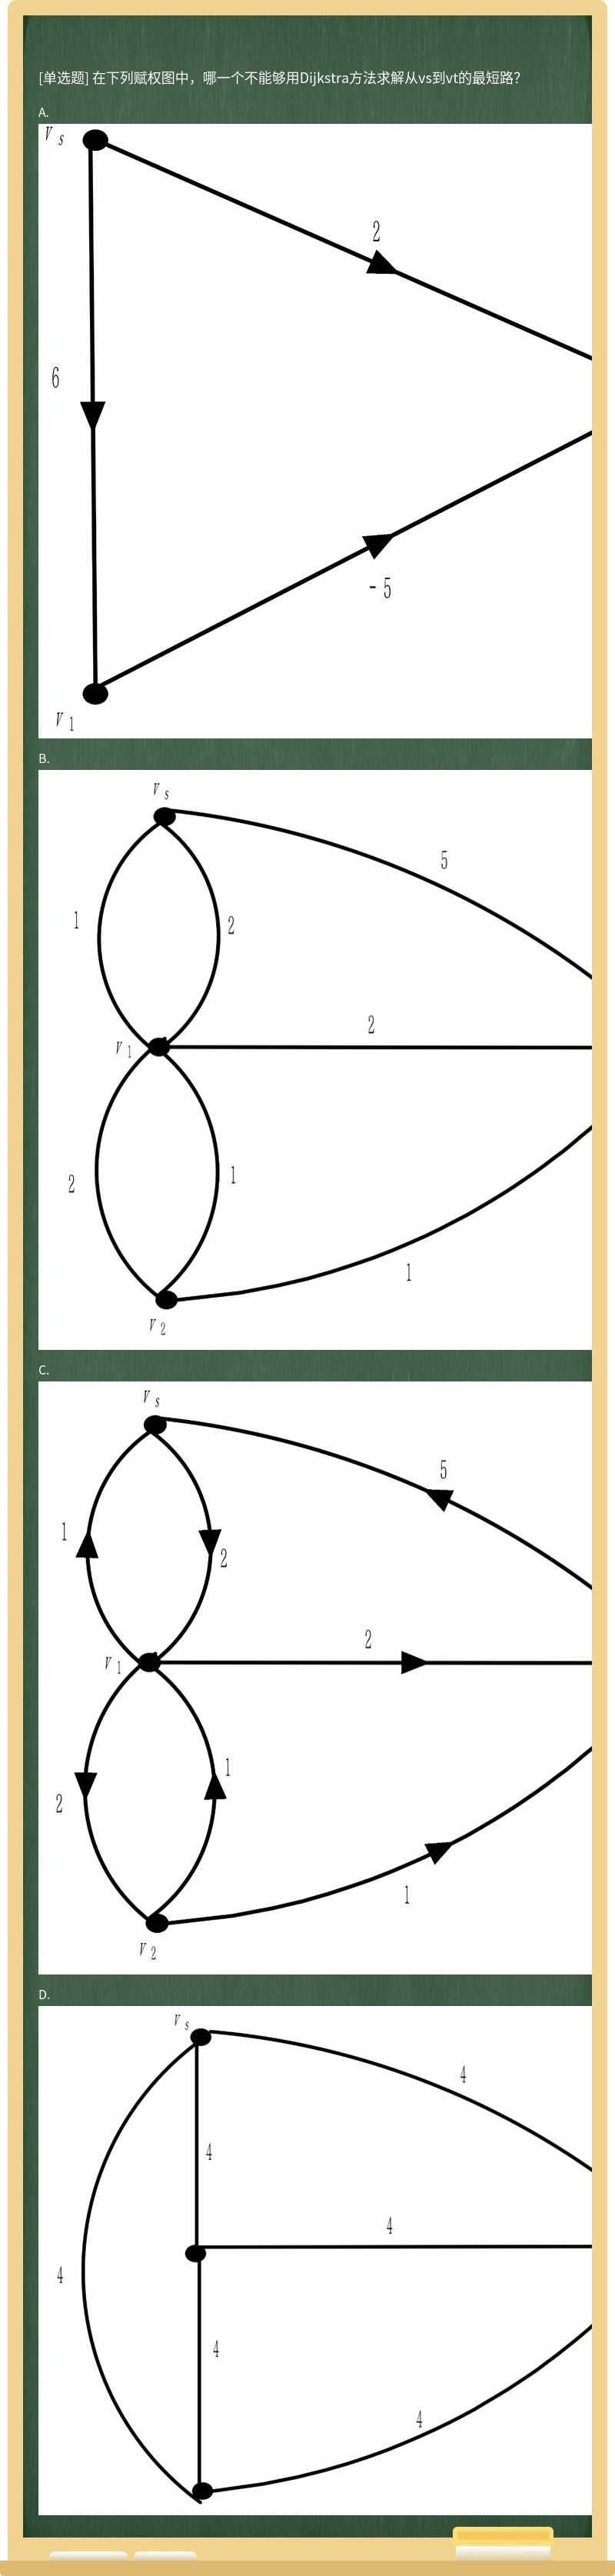 在下列赋权图中，哪一个不能够用Dijkstra方法求解从vs到vt的最短路？